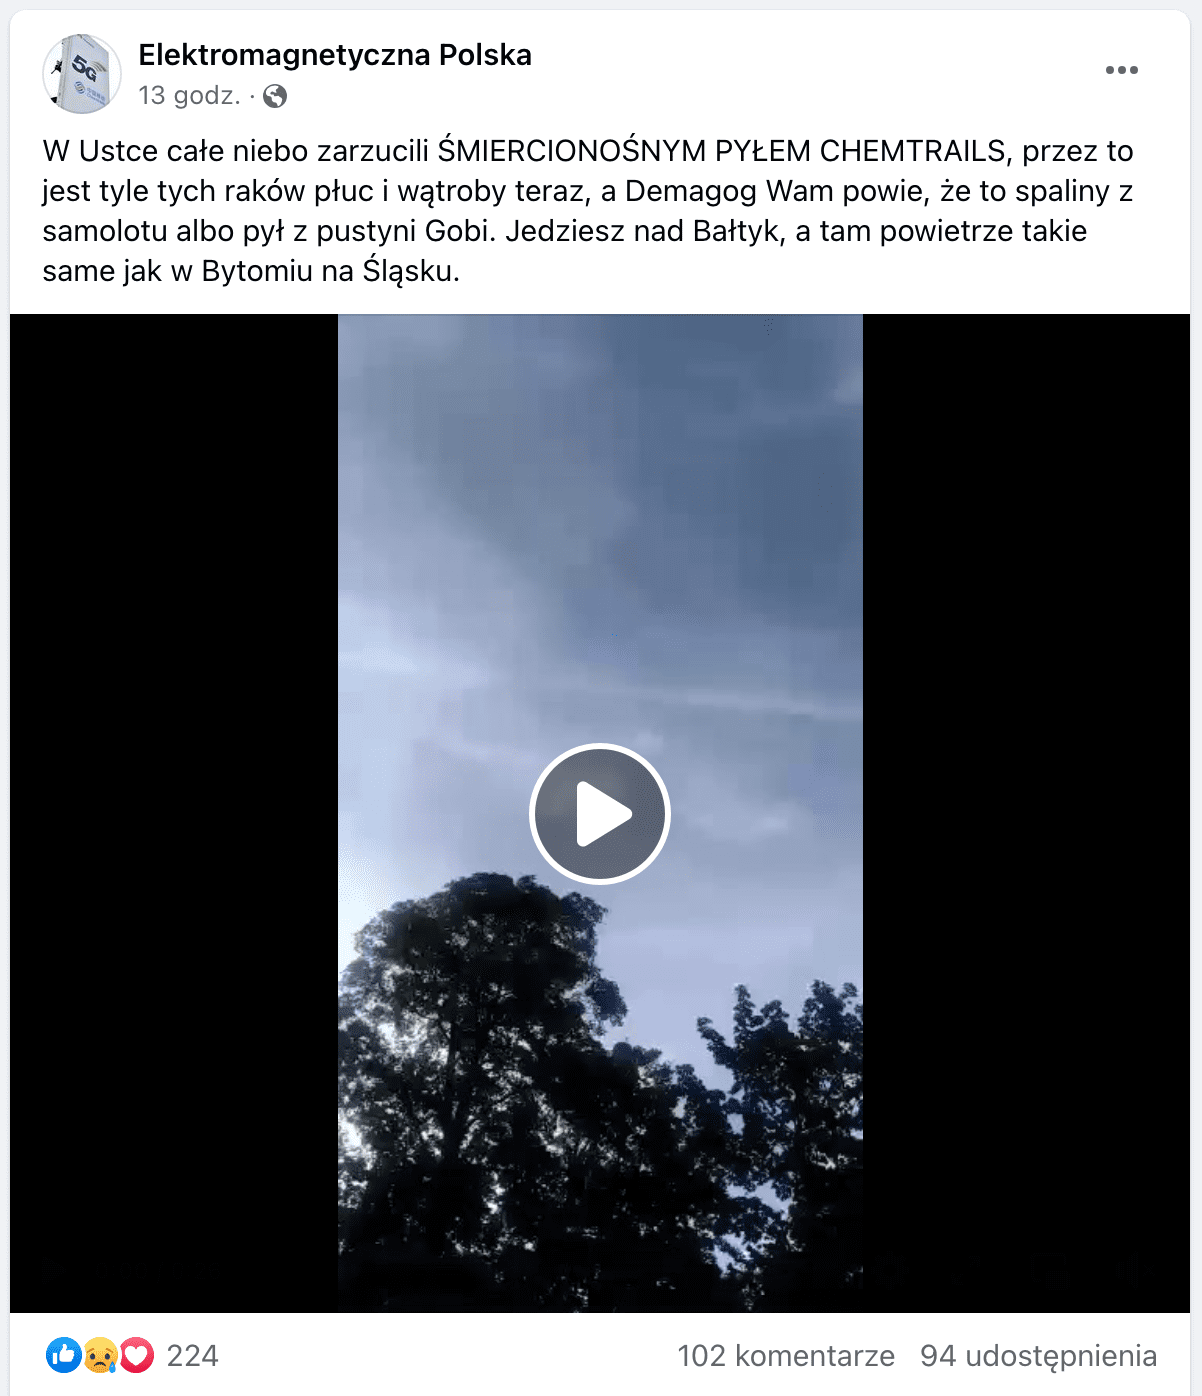 Zrzut ekranu omawianego posta na Facebooku. W kadrze filmu ujęto na drzewa na tle błękitnego nieba, które jest przecięte jasnymi smugami. 